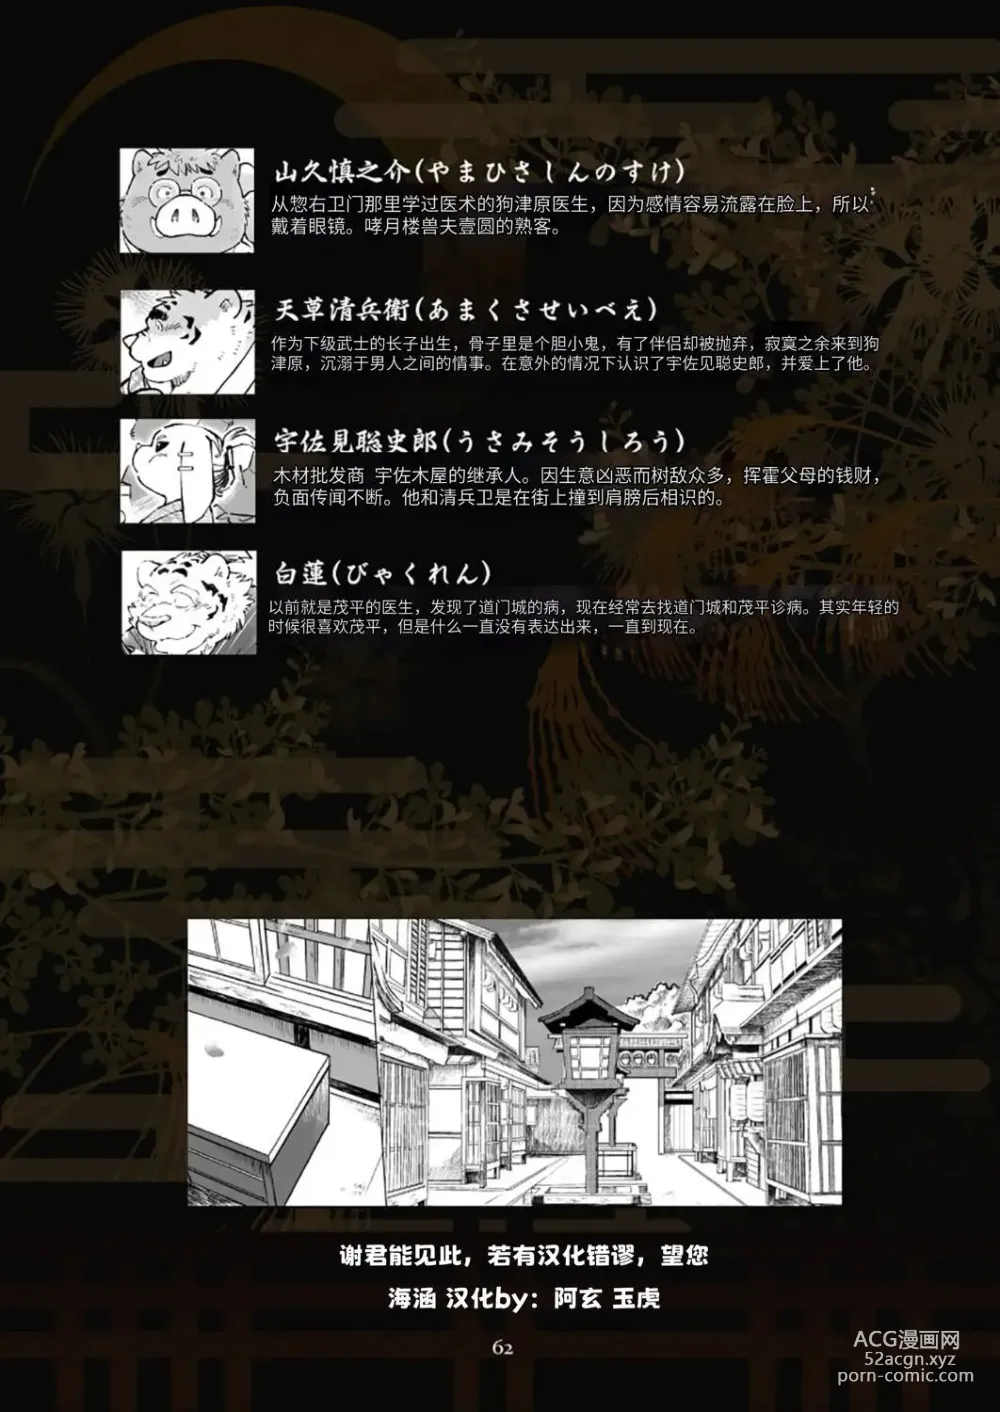 Page 62 of doujinshi 狗津原细见